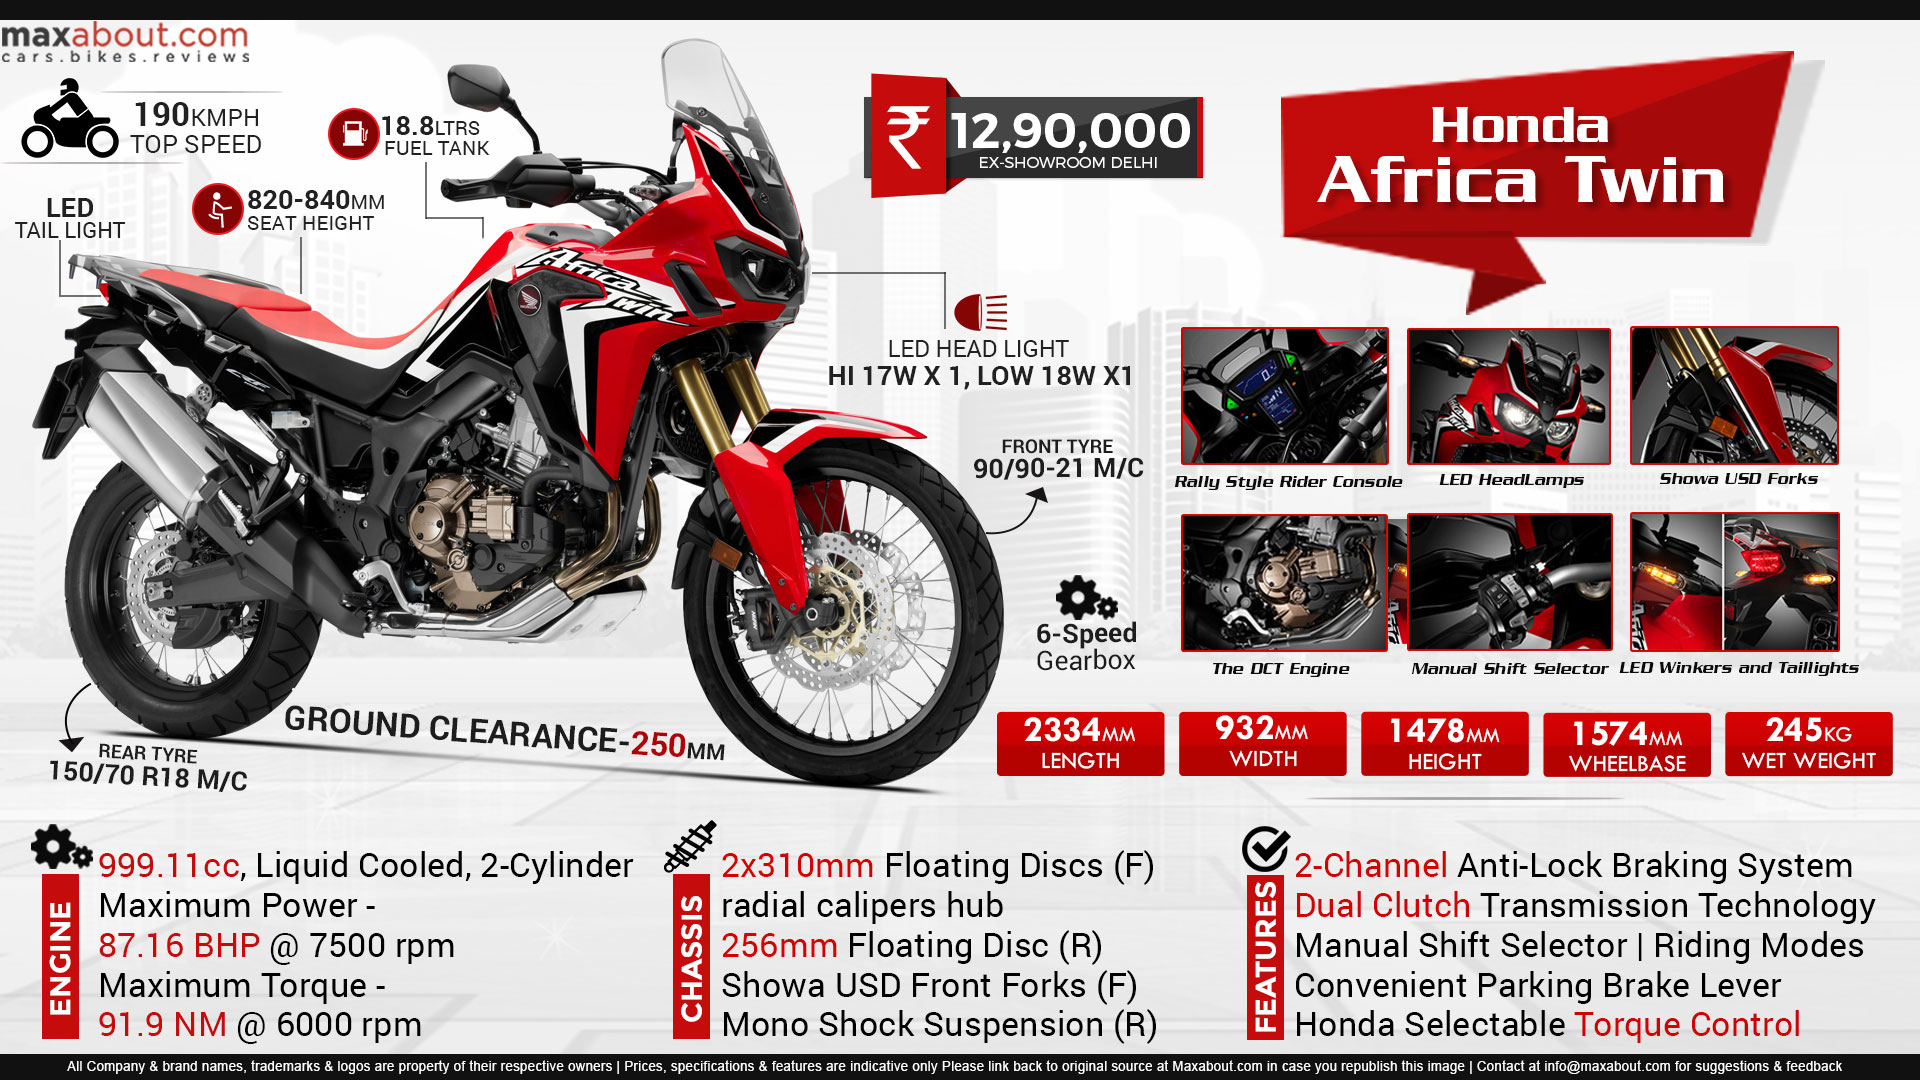 Honda crf1000l africa twin - тест | in-moto.ru